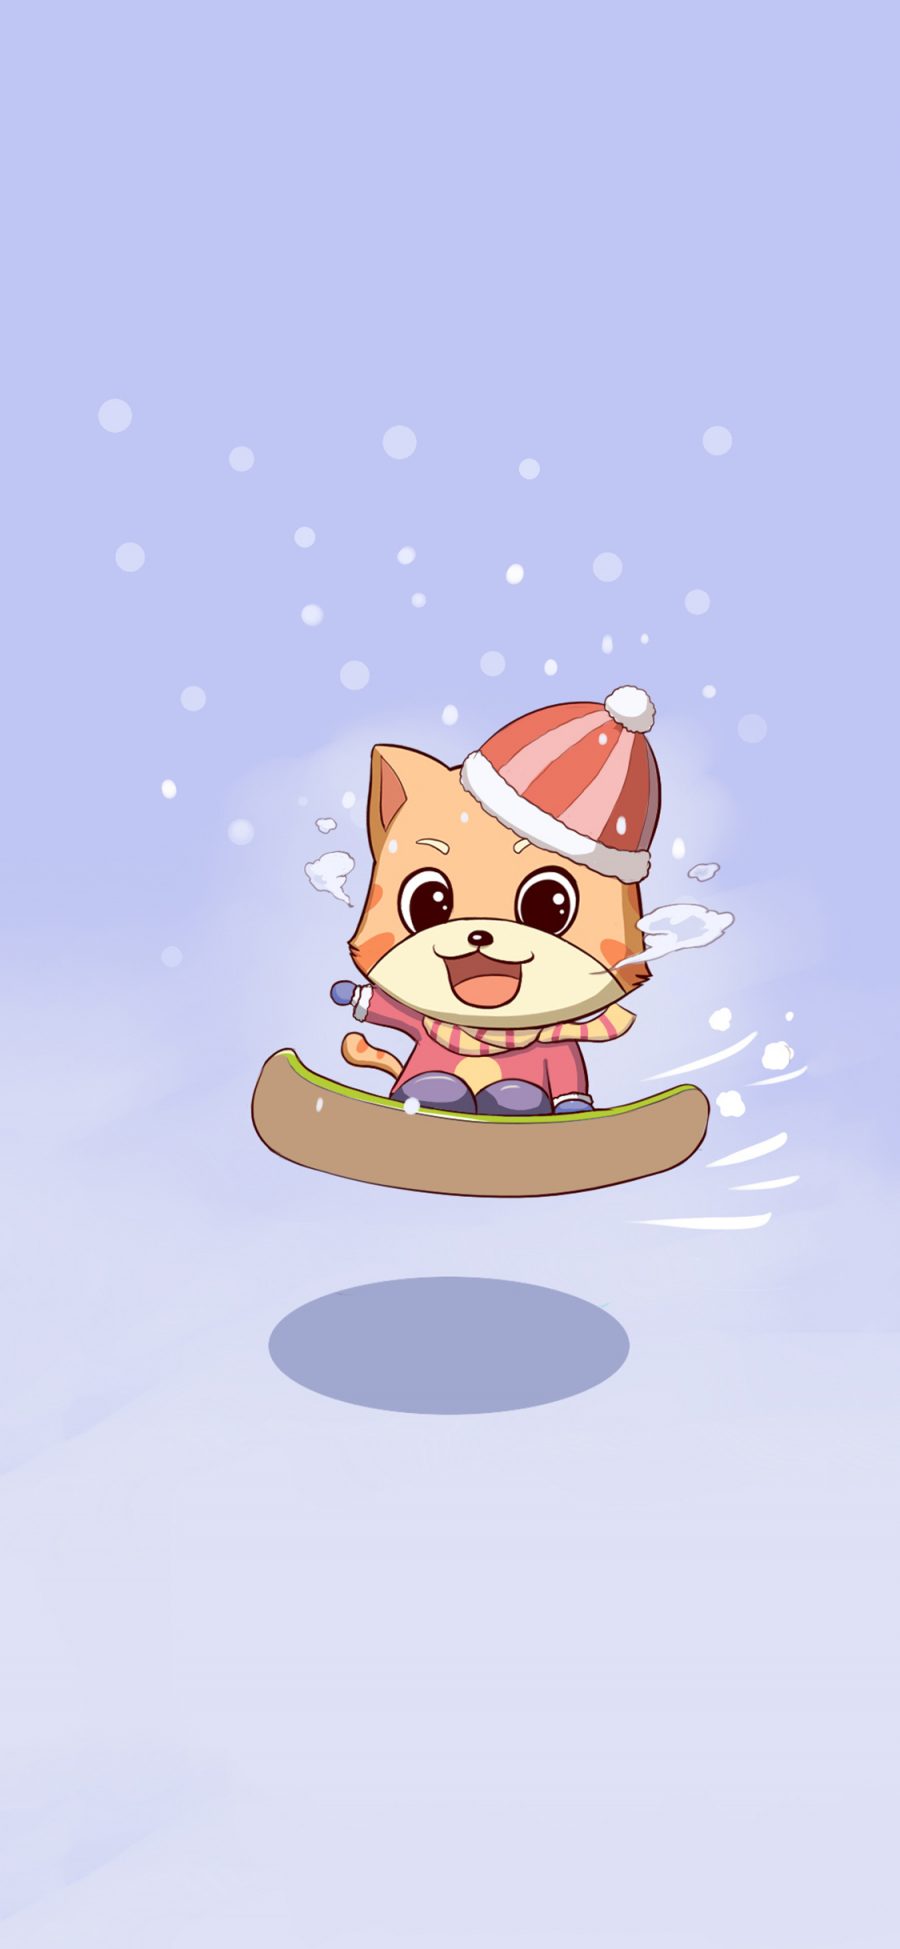 [2436×1125]卡通 猫咪 唐小猫 滑雪 苹果手机动漫壁纸图片